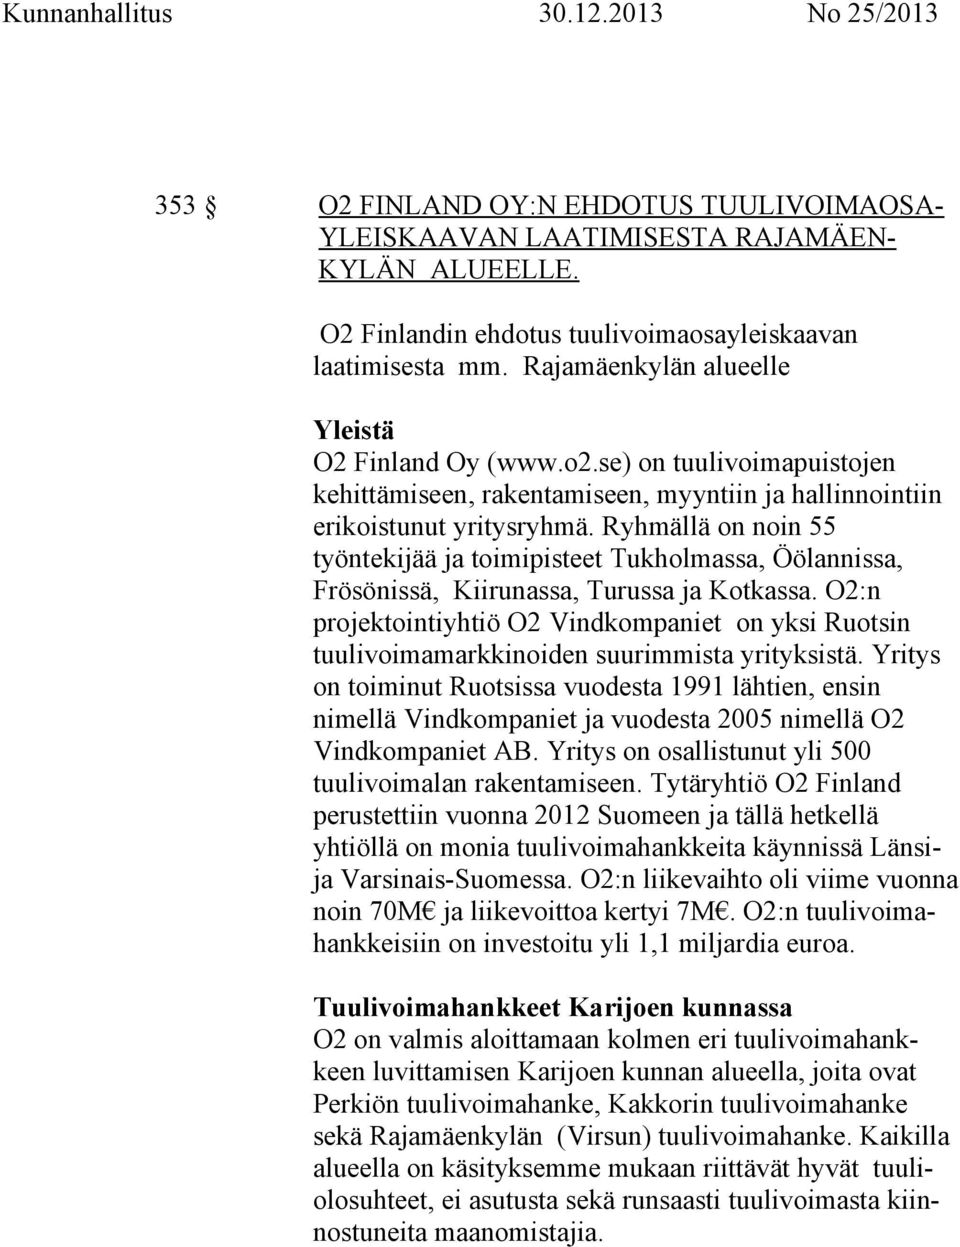 Ryhmällä on noin 55 työntekijää ja toimipisteet Tukholmassa, Öölannissa, Frösönissä, Kiirunassa, Turussa ja Kotkassa.